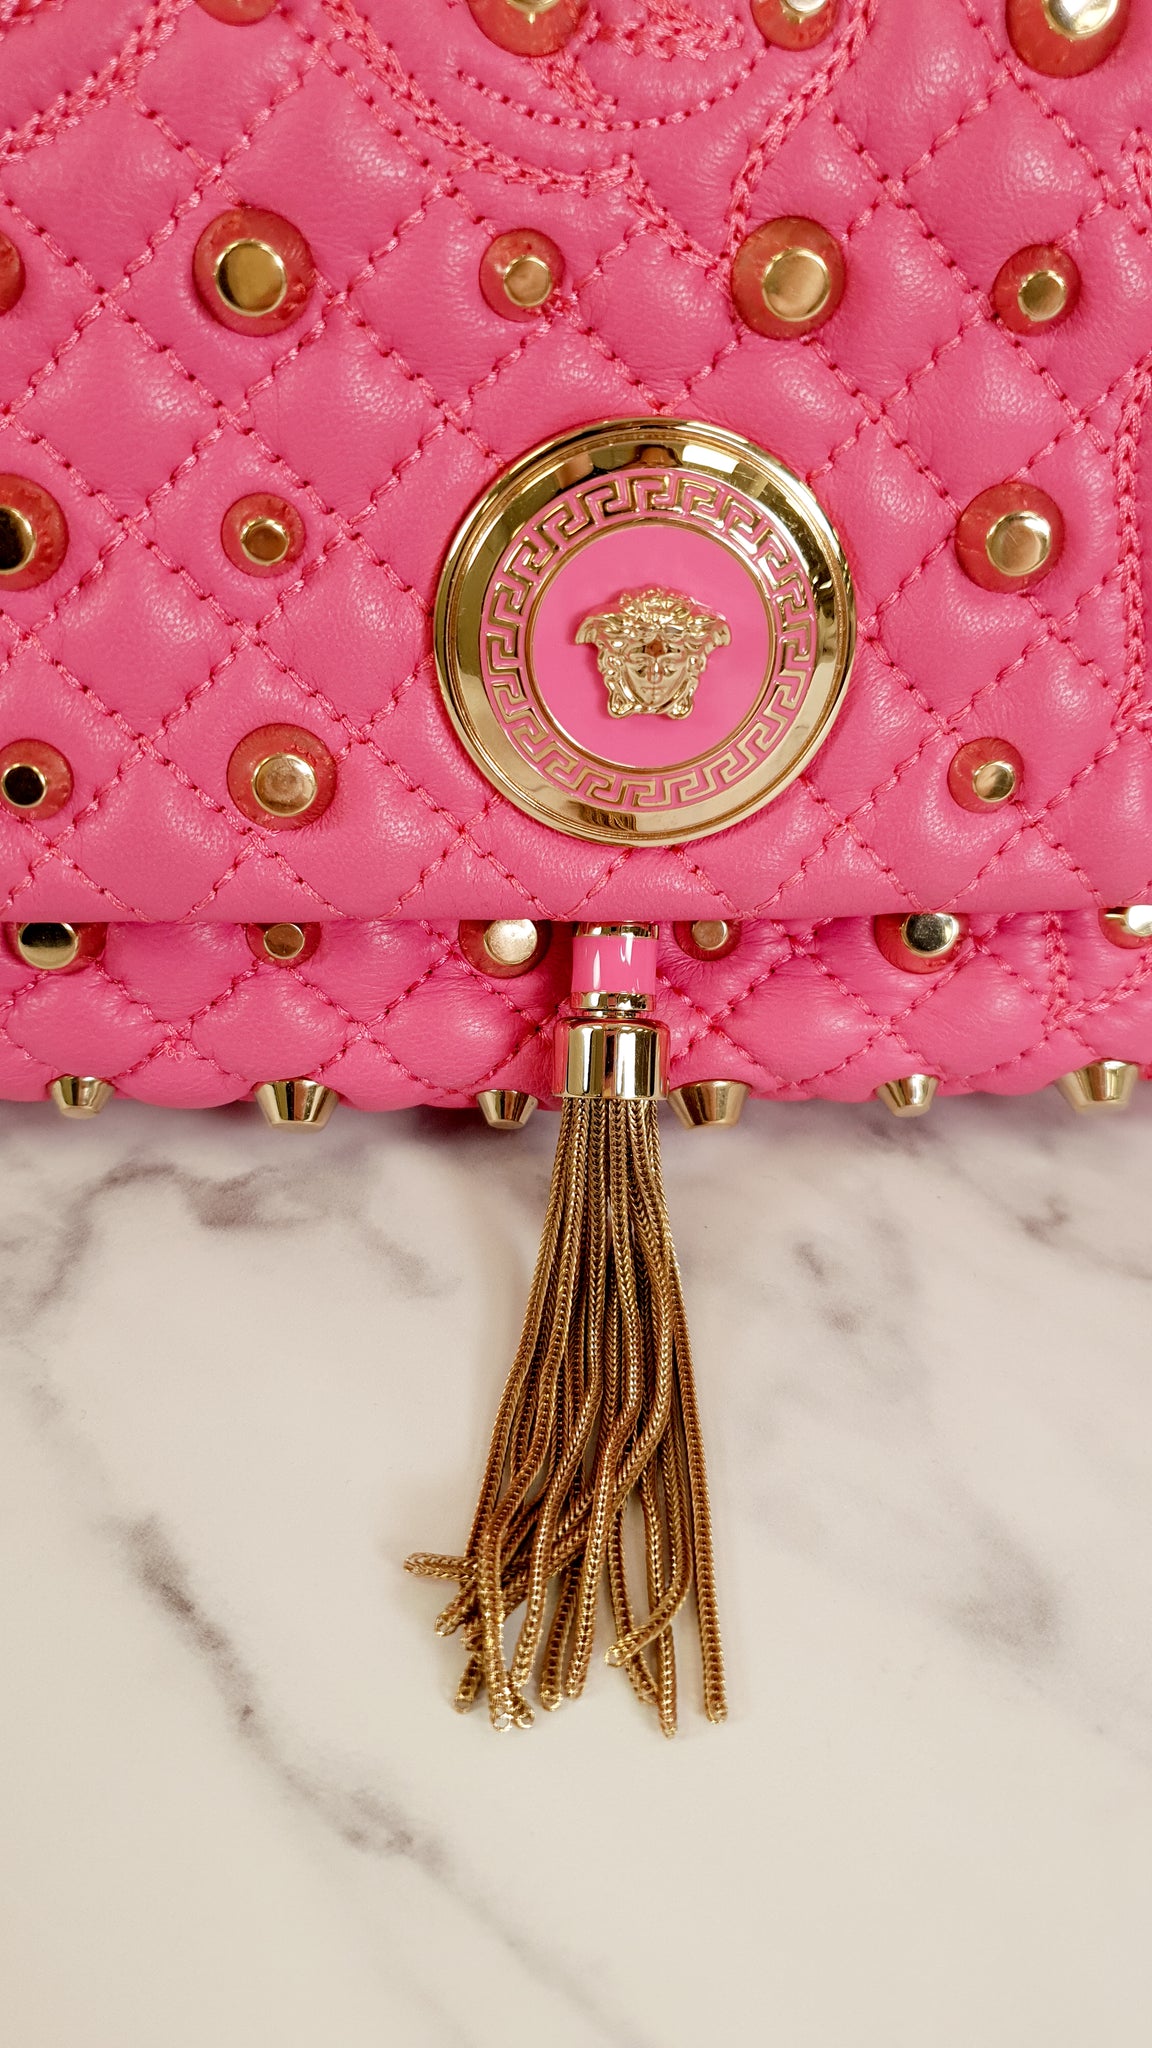 Versace Pink Leather Medusa Backpack